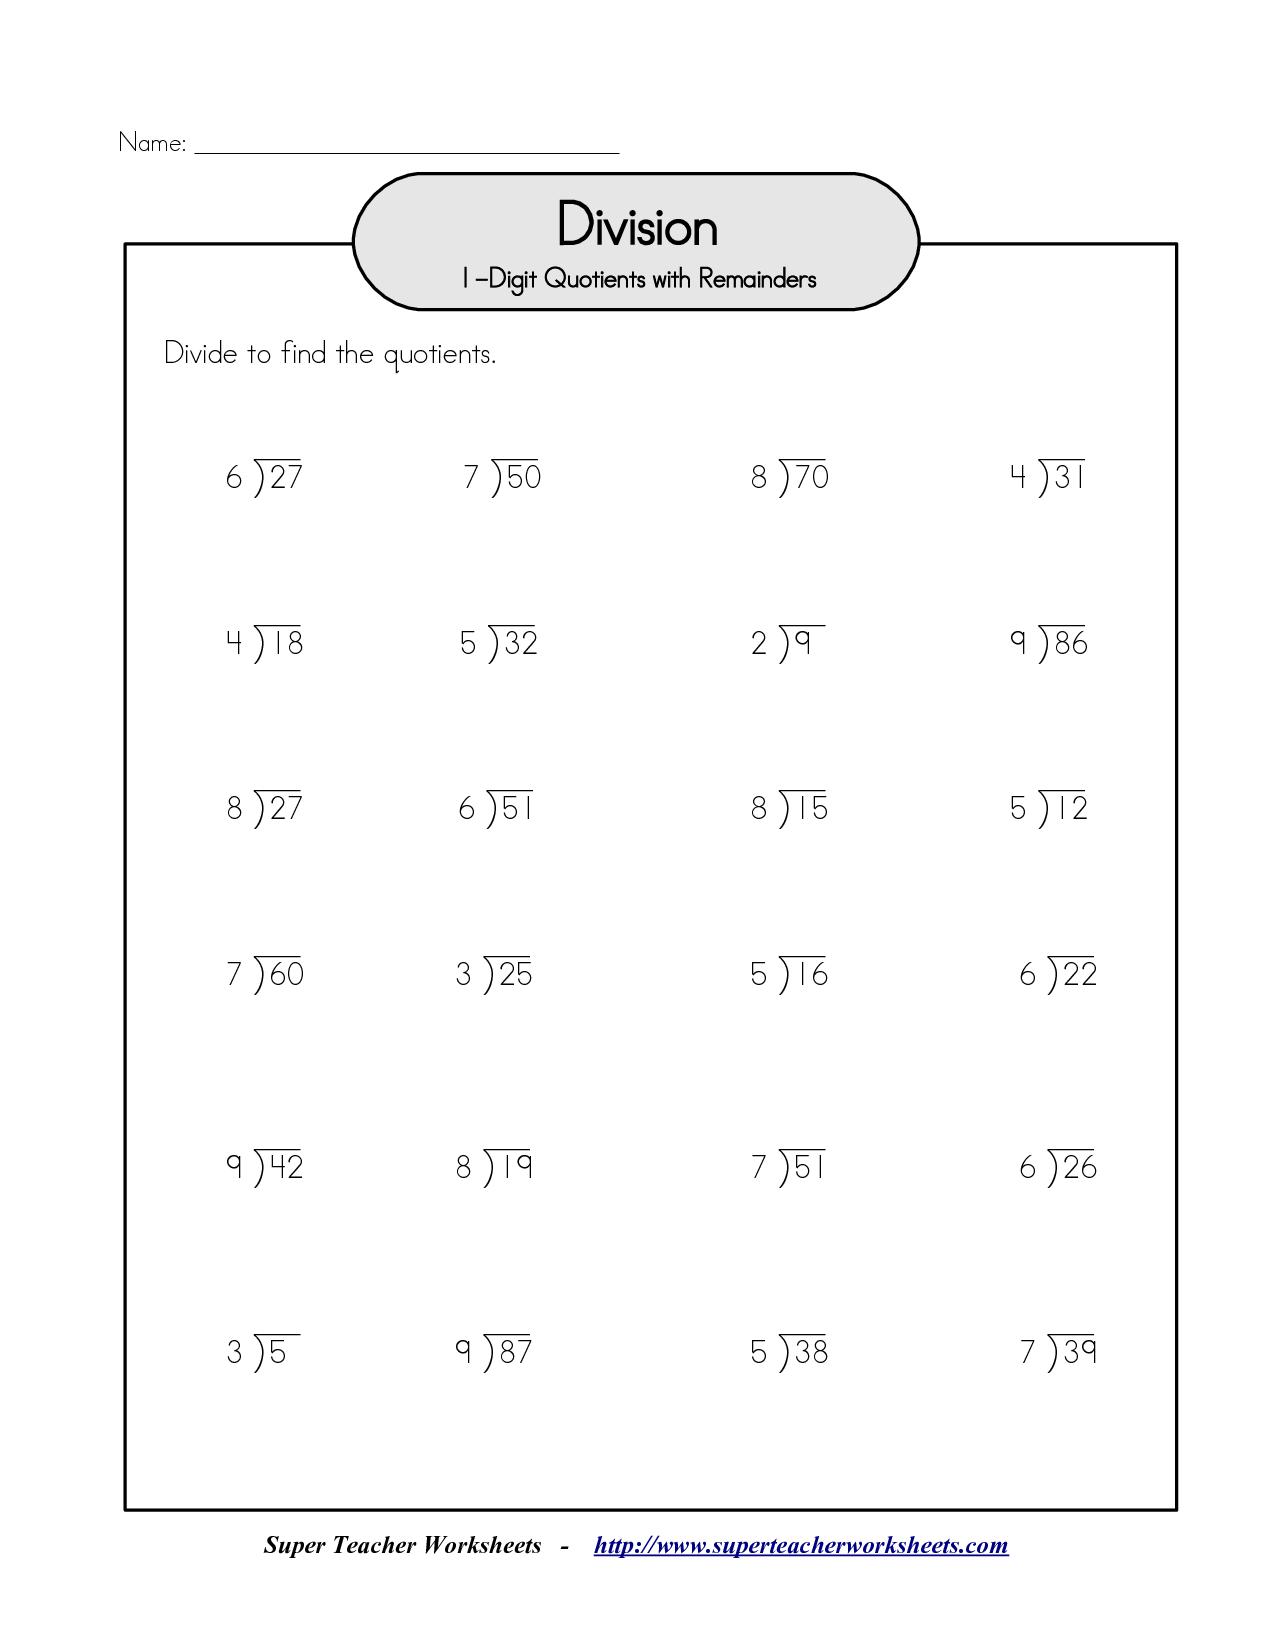 15-best-images-of-division-worksheets-2-2-digit-divisor-long-division-worksheets-division